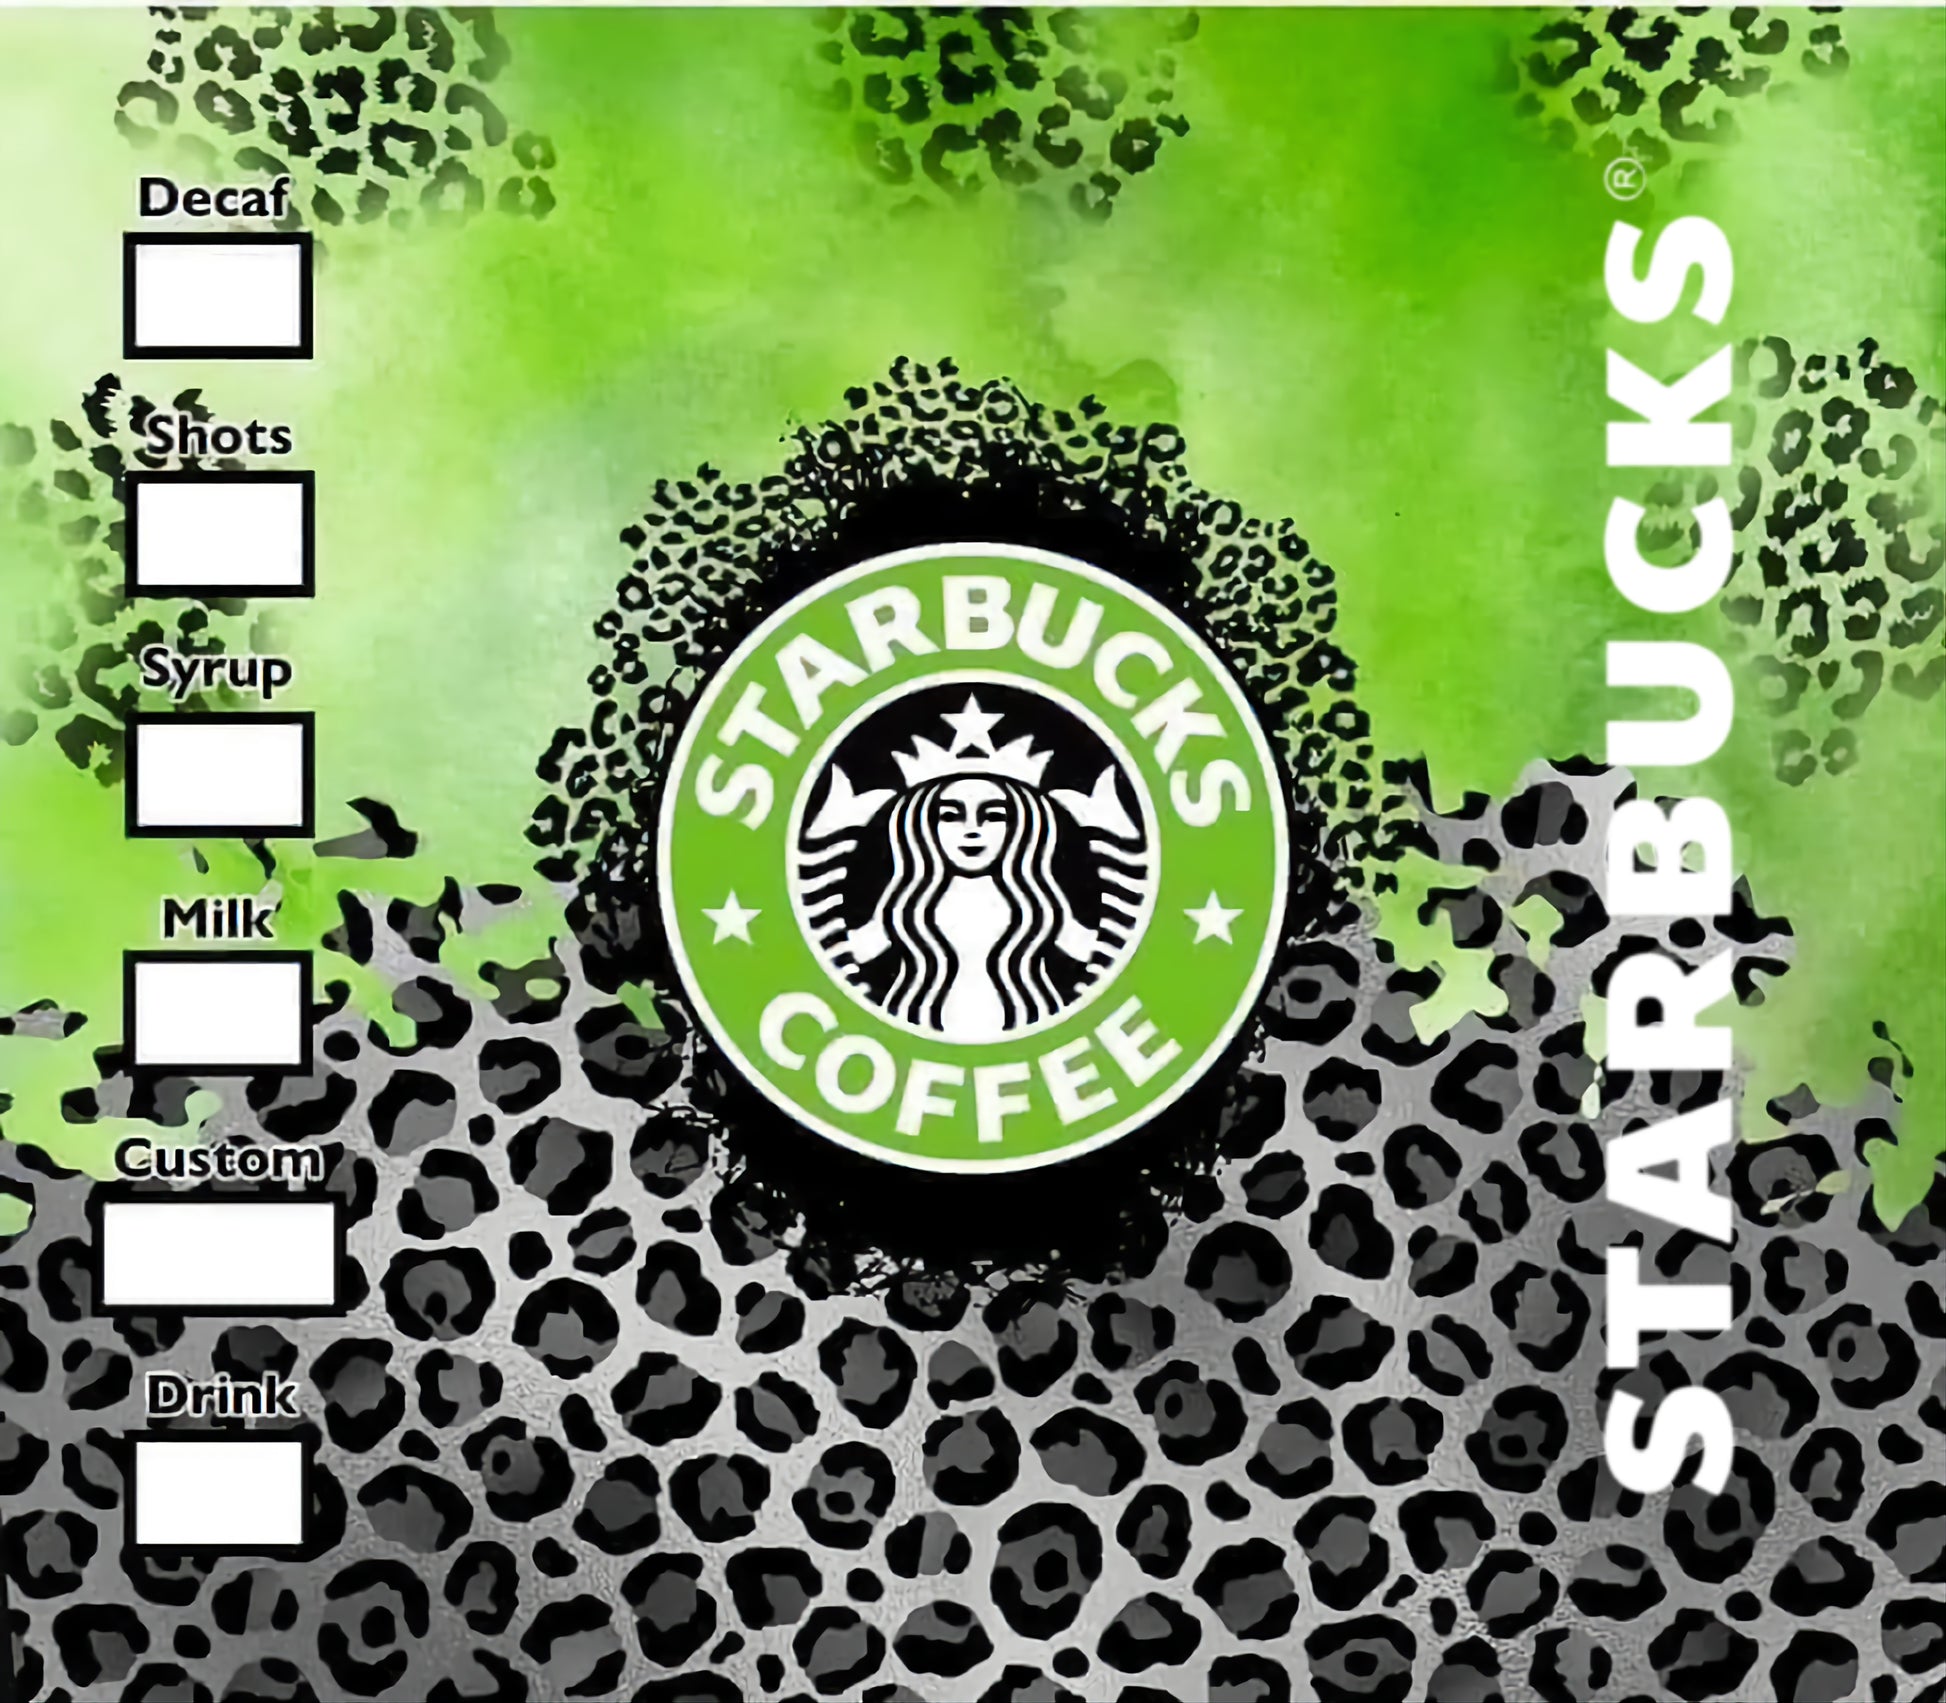 Starbucks Cheetah Print Tumbler, Stainless Steel Tumbler, Gifts